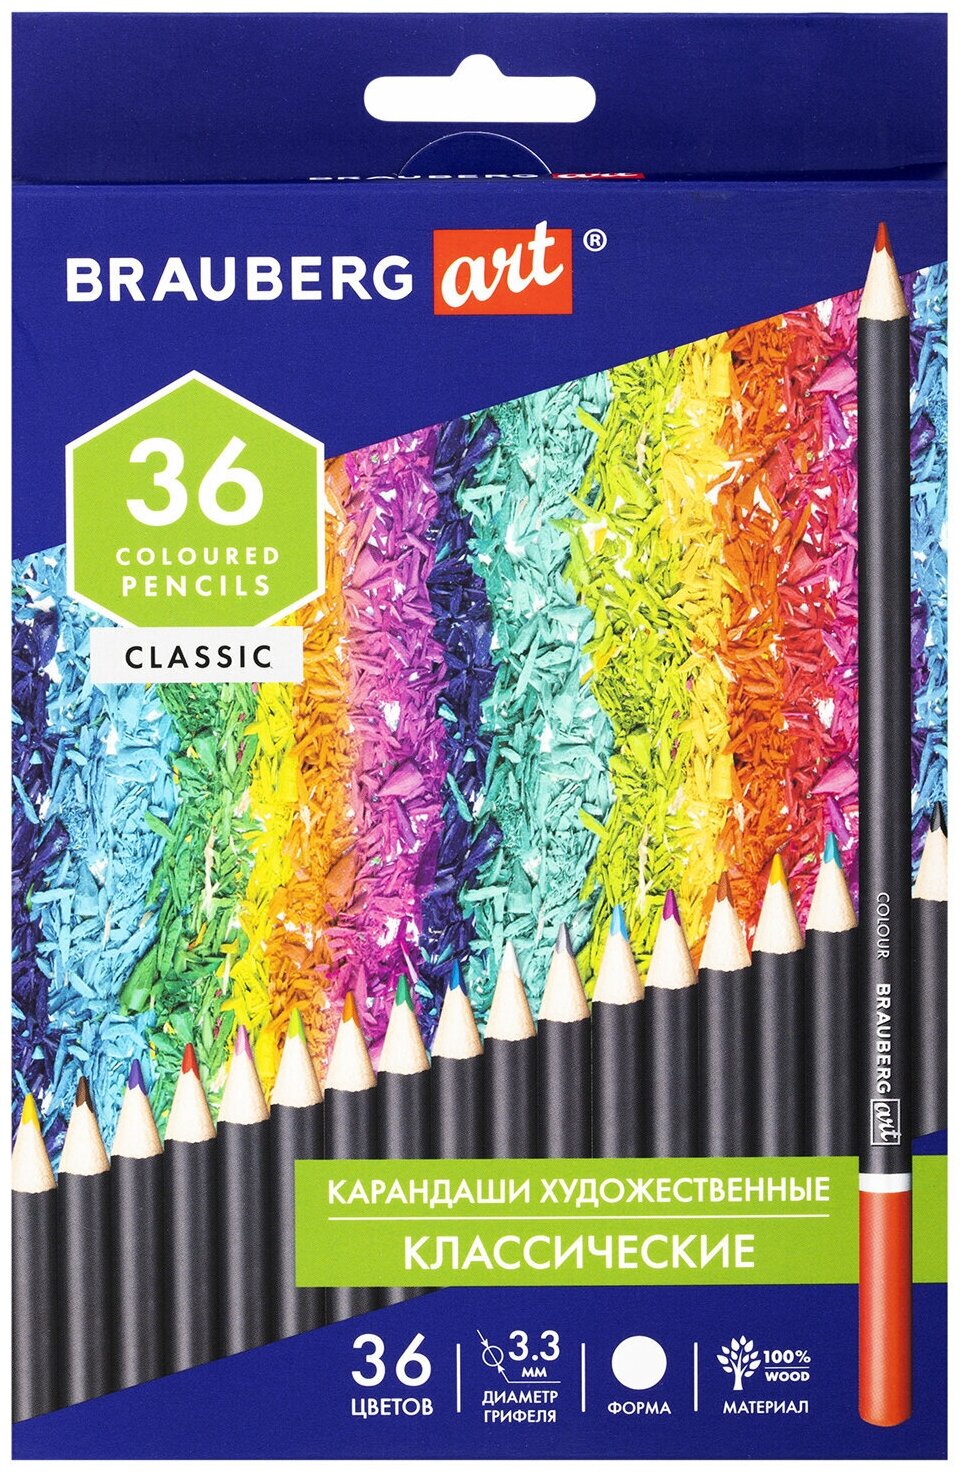 Карандаши художественные Brauberg Art Classic, цветные, 36 цветов, мягкий грифель 3,3 мм